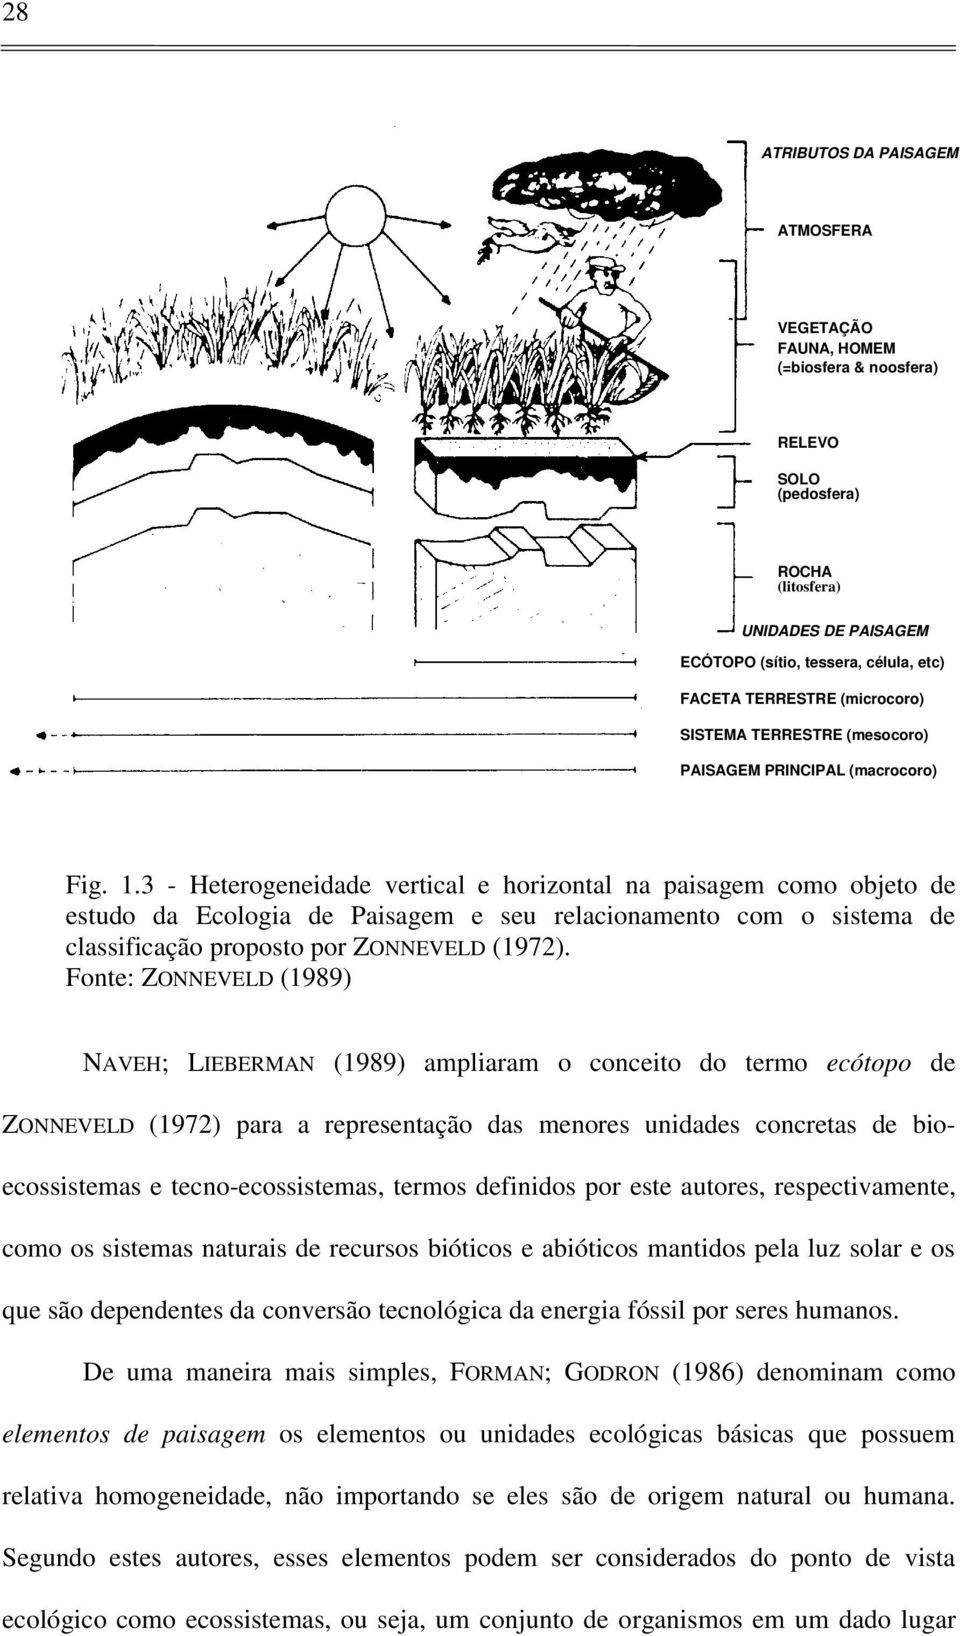 3 - Heterogeneidade vertical e horizontal na paisagem como objeto de estudo da Ecologia de Paisagem e seu relacionamento com o sistema de classificação proposto por ZONNEVELD (1972).